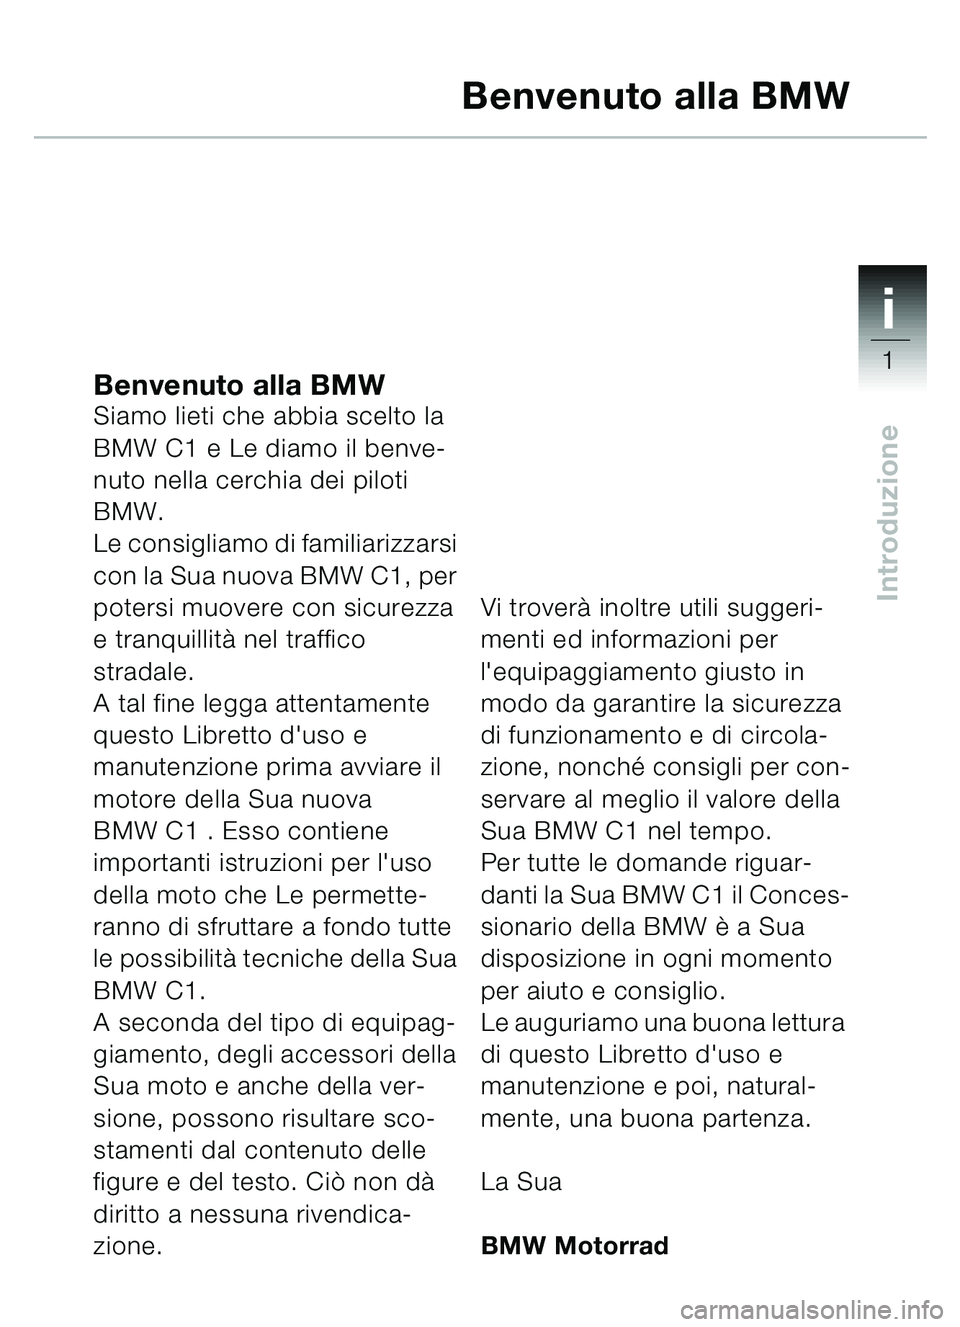 BMW MOTORRAD C1 2000  Libretto di uso e manutenzione (in Italian) 1i
1
Introduzione
Benvenuto alla BMWSiamo lieti che abbia scelto la 
BMW C1 e Le diamo il benve-
nuto nella cerchia dei piloti 
BMW.
Le consigliamo di familiarizzarsi 
con la Sua nuova BMW C1, per 
po